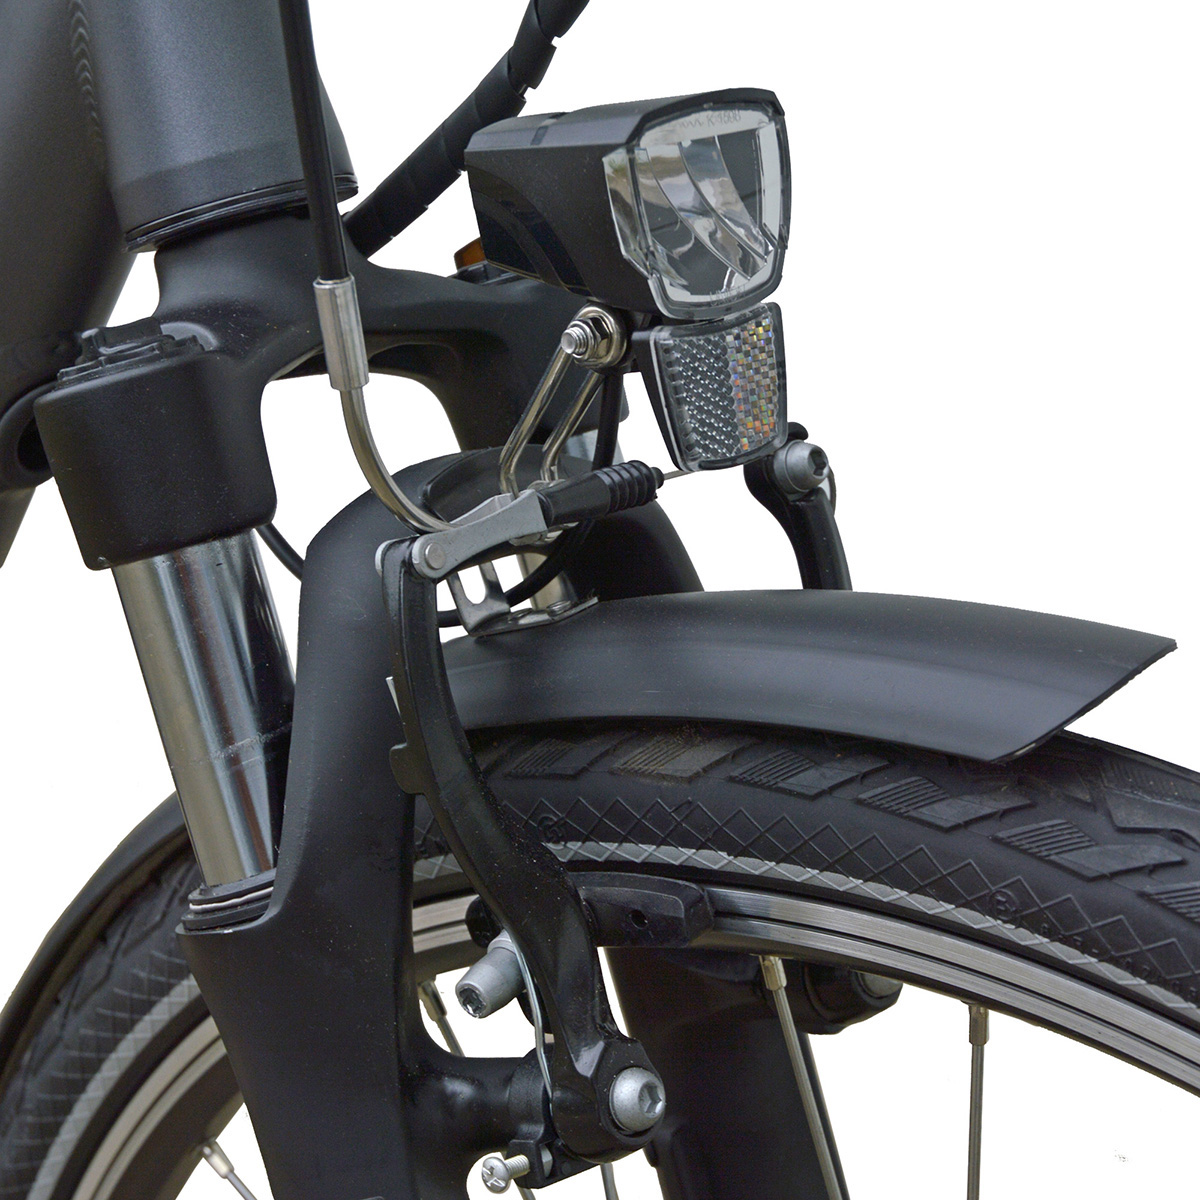 Rahmenhöhe: Le Bonheur Petit VILLETTE (Laufradgröße: Damen-Rad, cm, 470 26 45 Zoll, Schwarz) Citybike Wh,